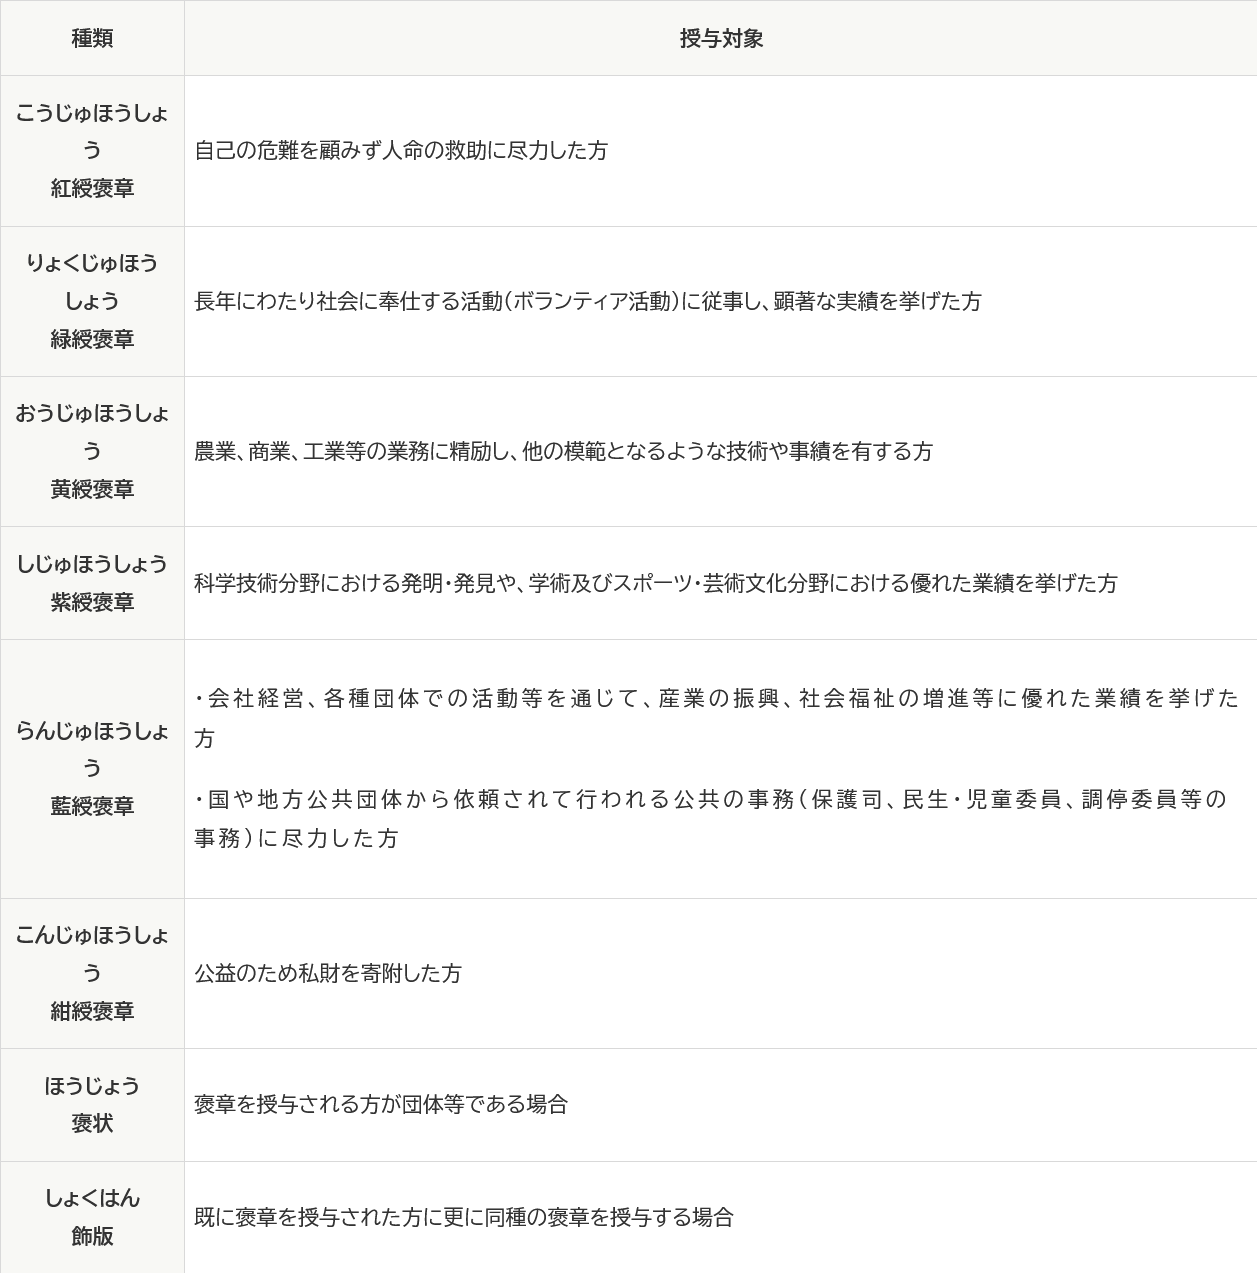 日本の褒章の種類及び授与対象をまとめた表